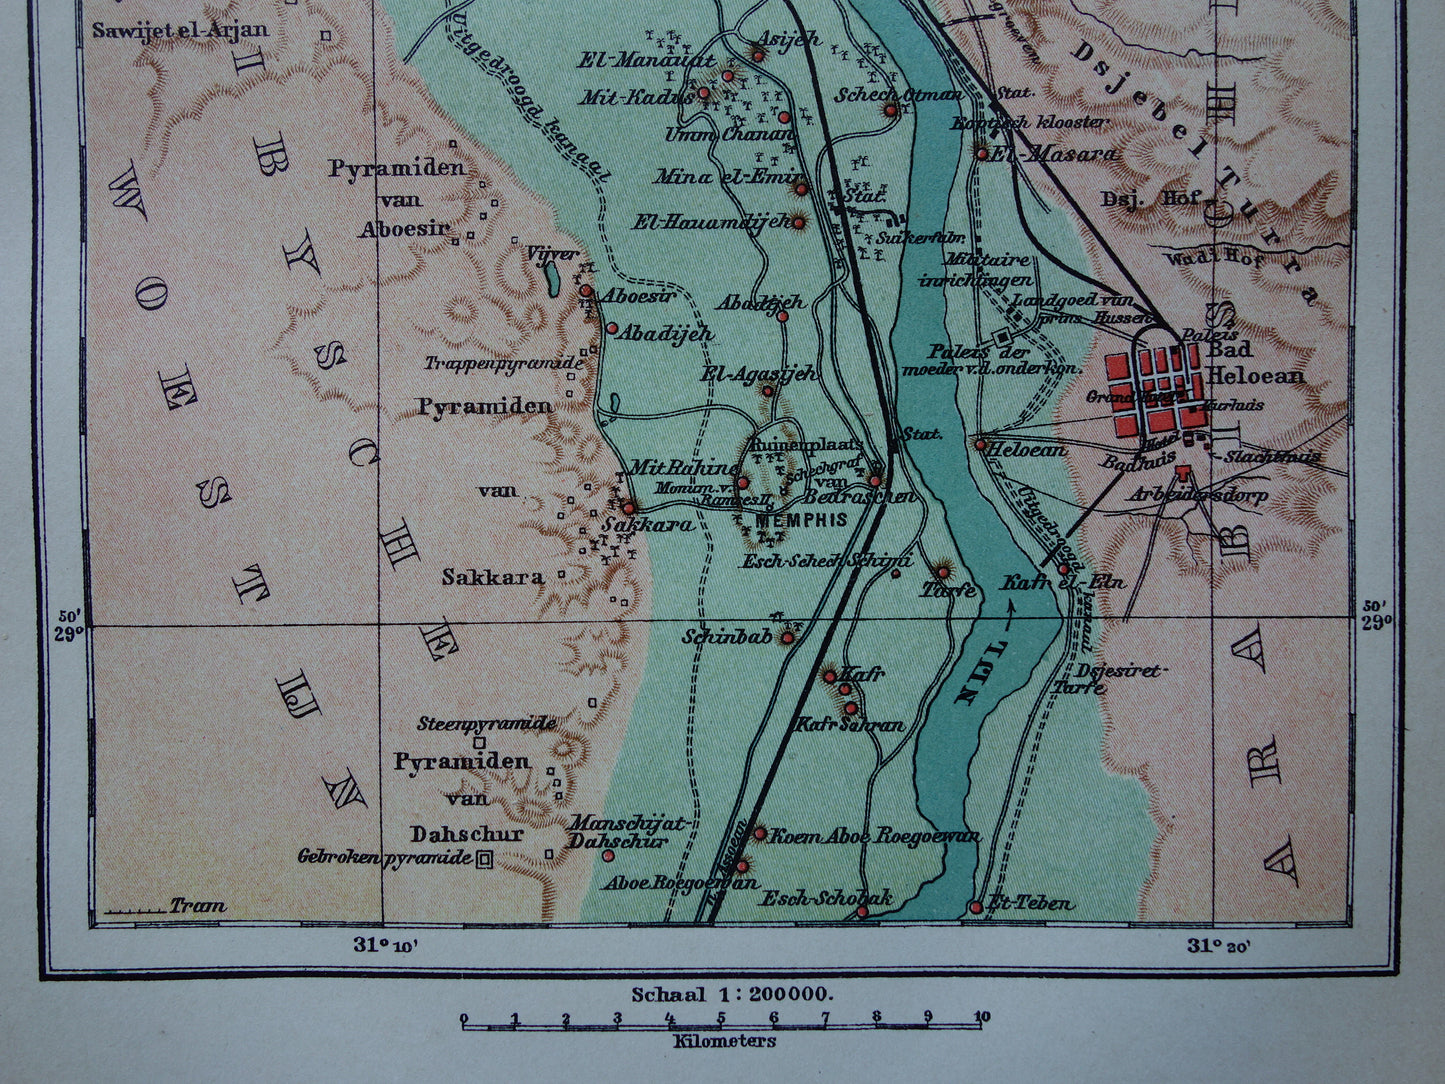 Oude kaart van Caïro Egypte uit 1909 antieke Nederlandse plattegrond van Cairo en de pyramiden